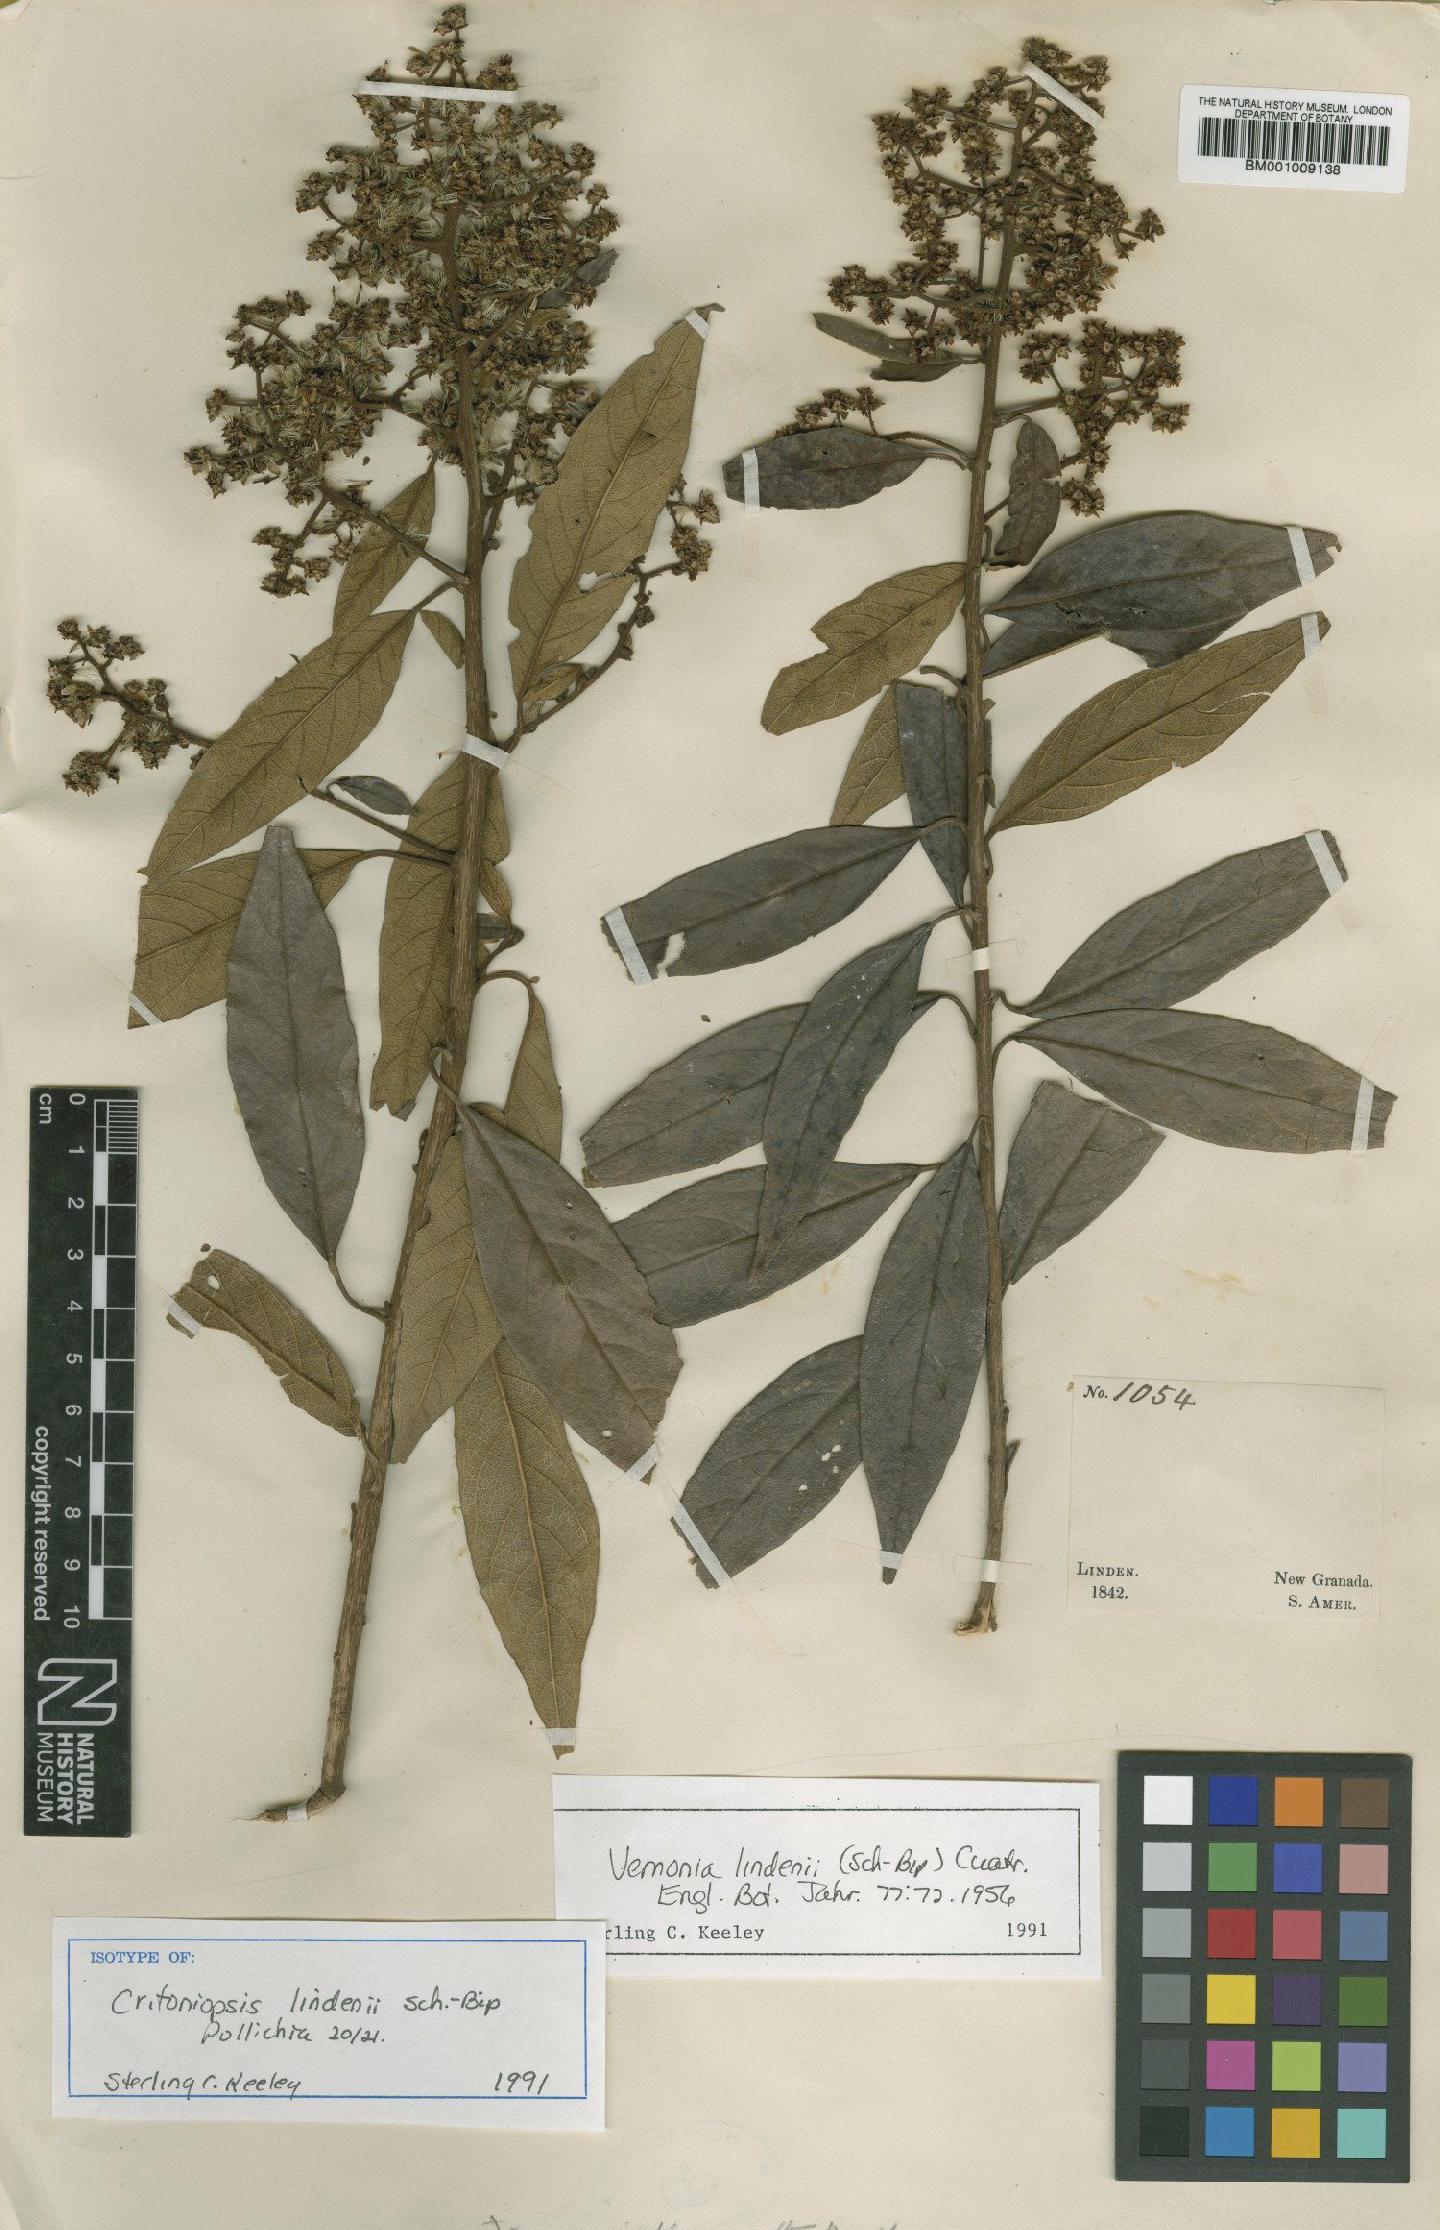 To NHMUK collection (Vernonia lindenii (Sch.Bip.) Cuatrec.; Isotype; NHMUK:ecatalogue:555821)